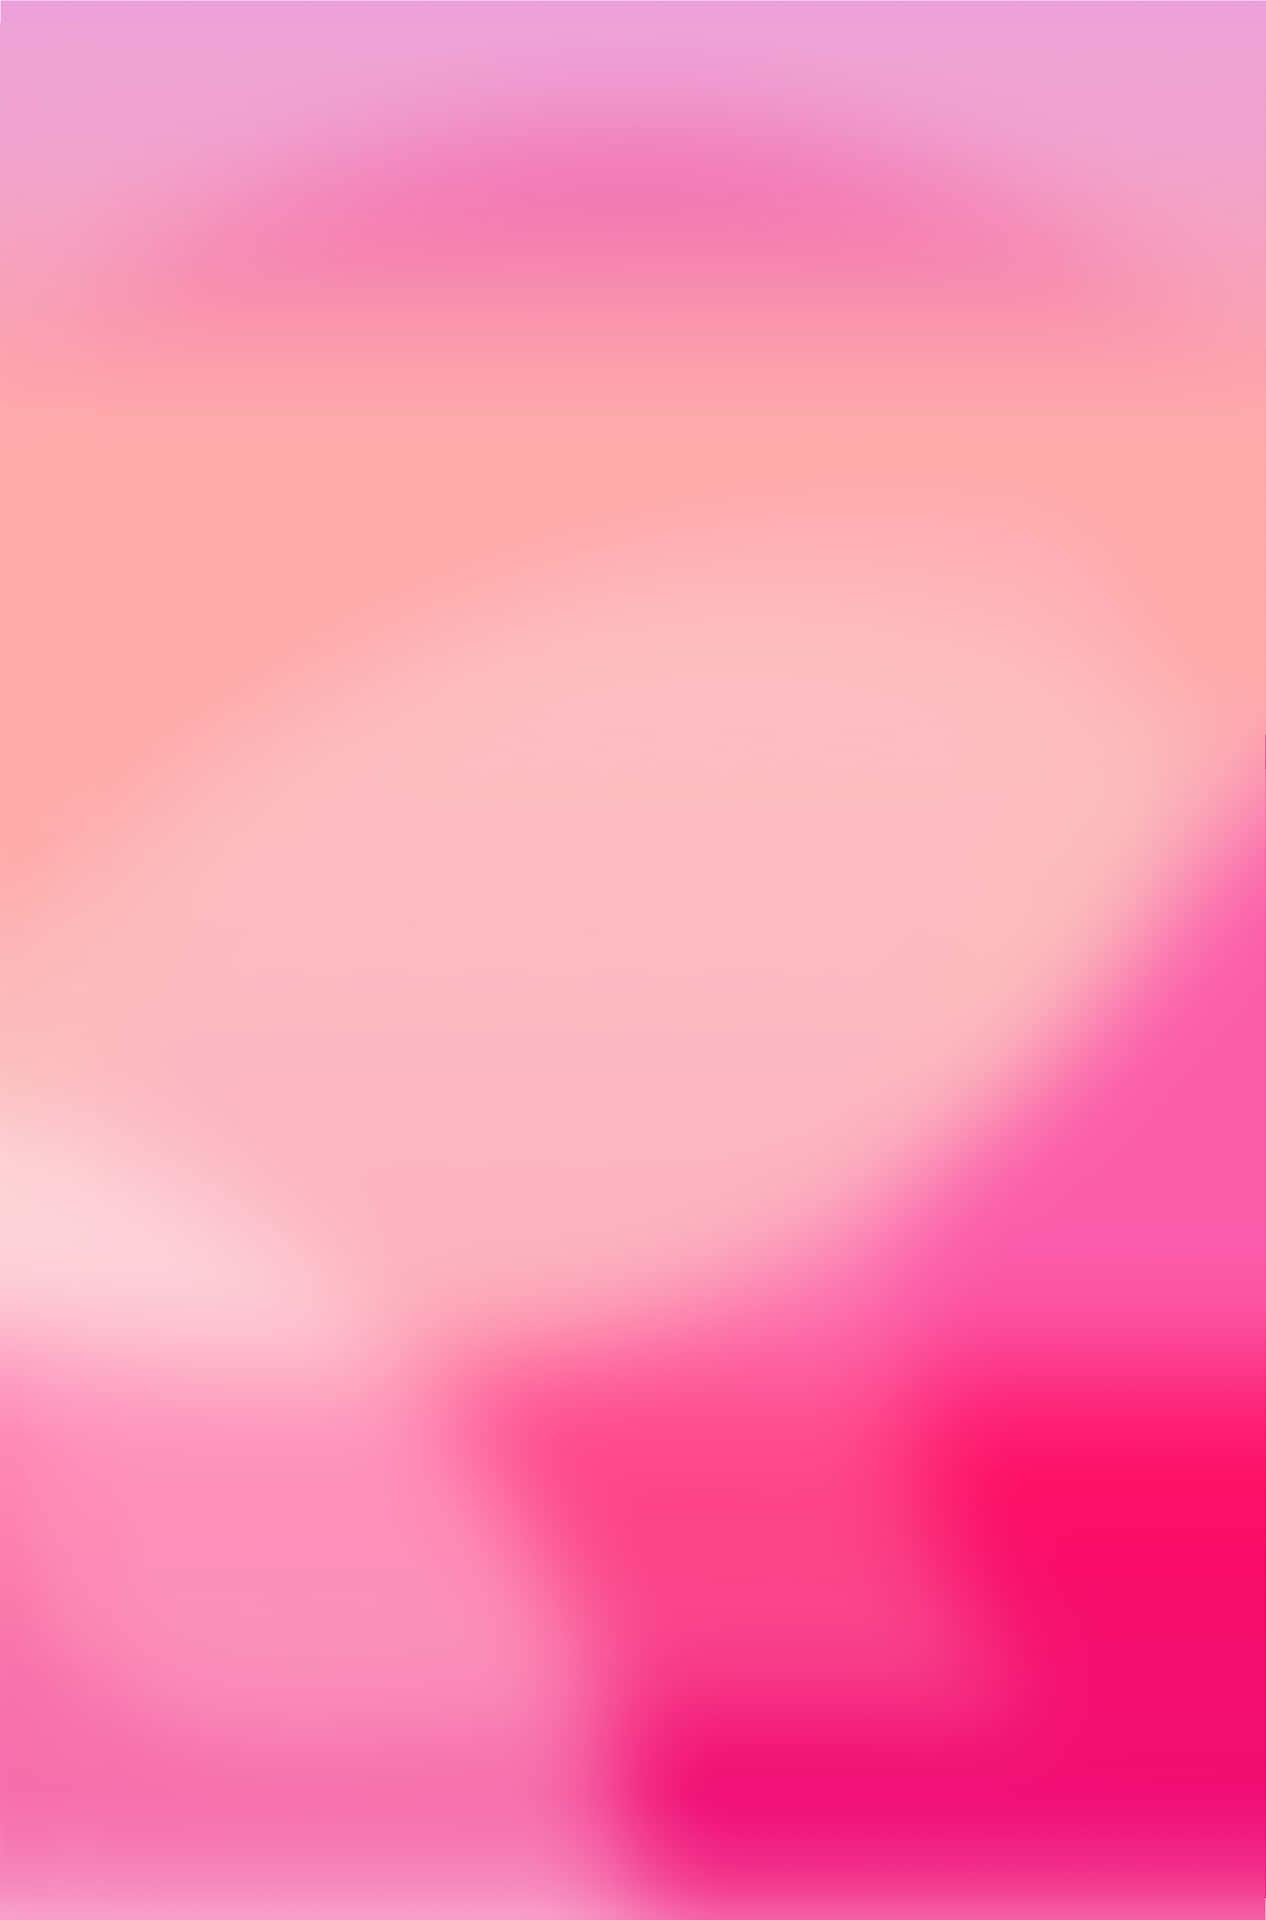 Pink Gradient Background 2732 X 4144